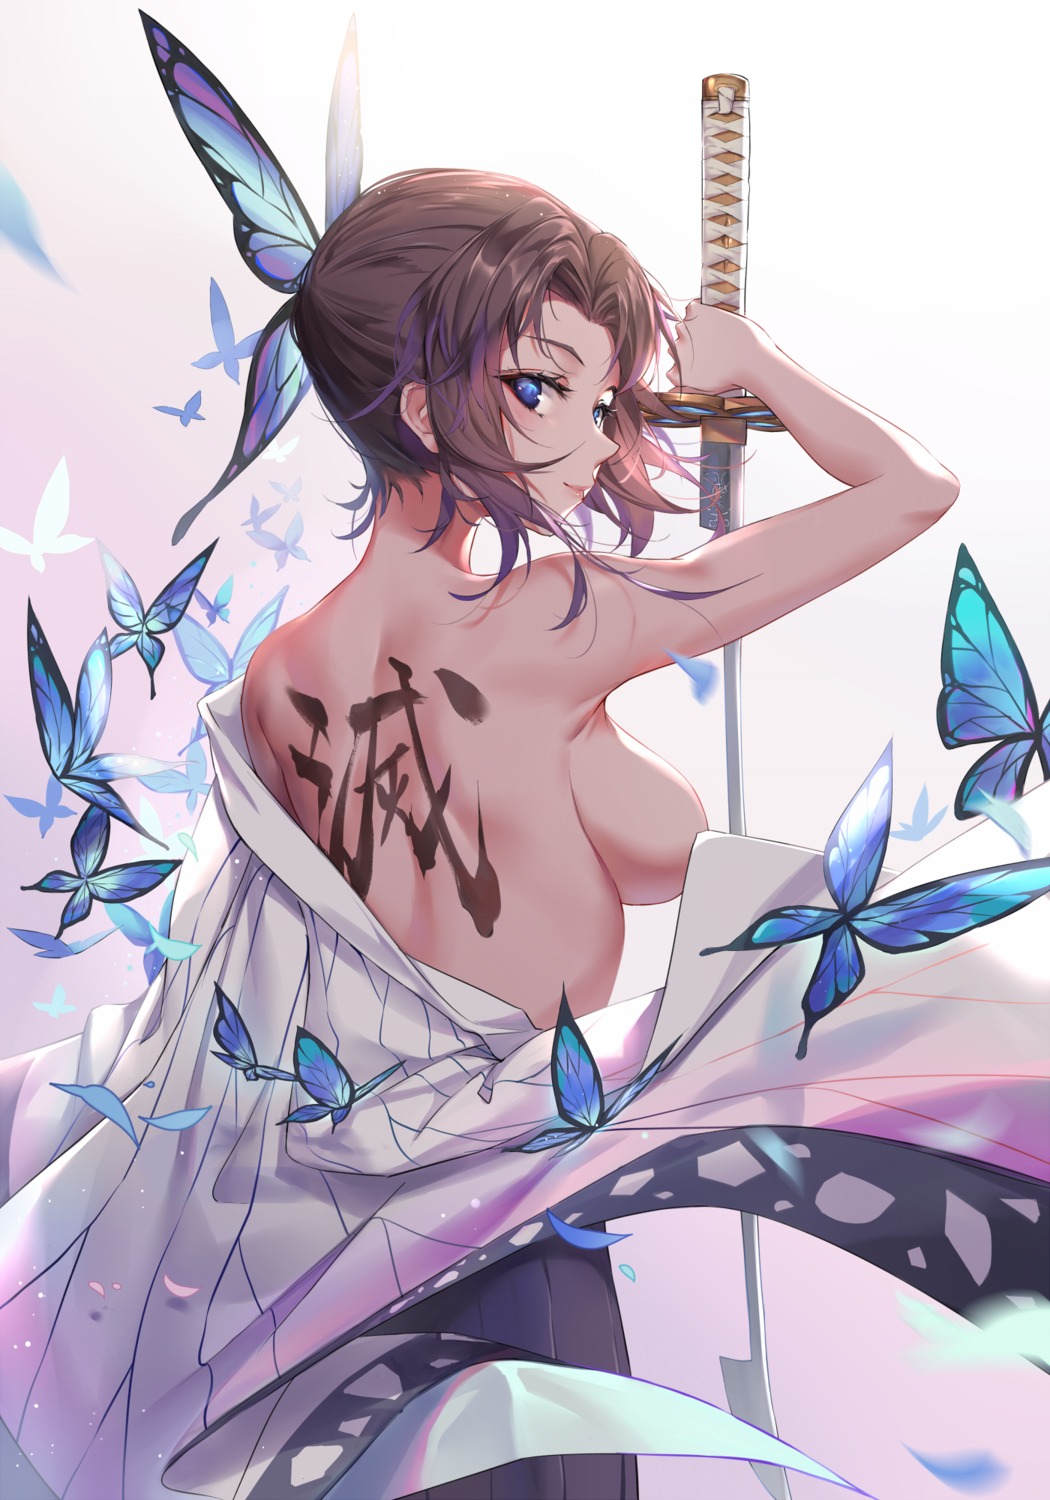 breasts japanese_clothes kimetsu_no_yaiba kochou_shinobu no_bra open_shirt pdxen sword tattoo